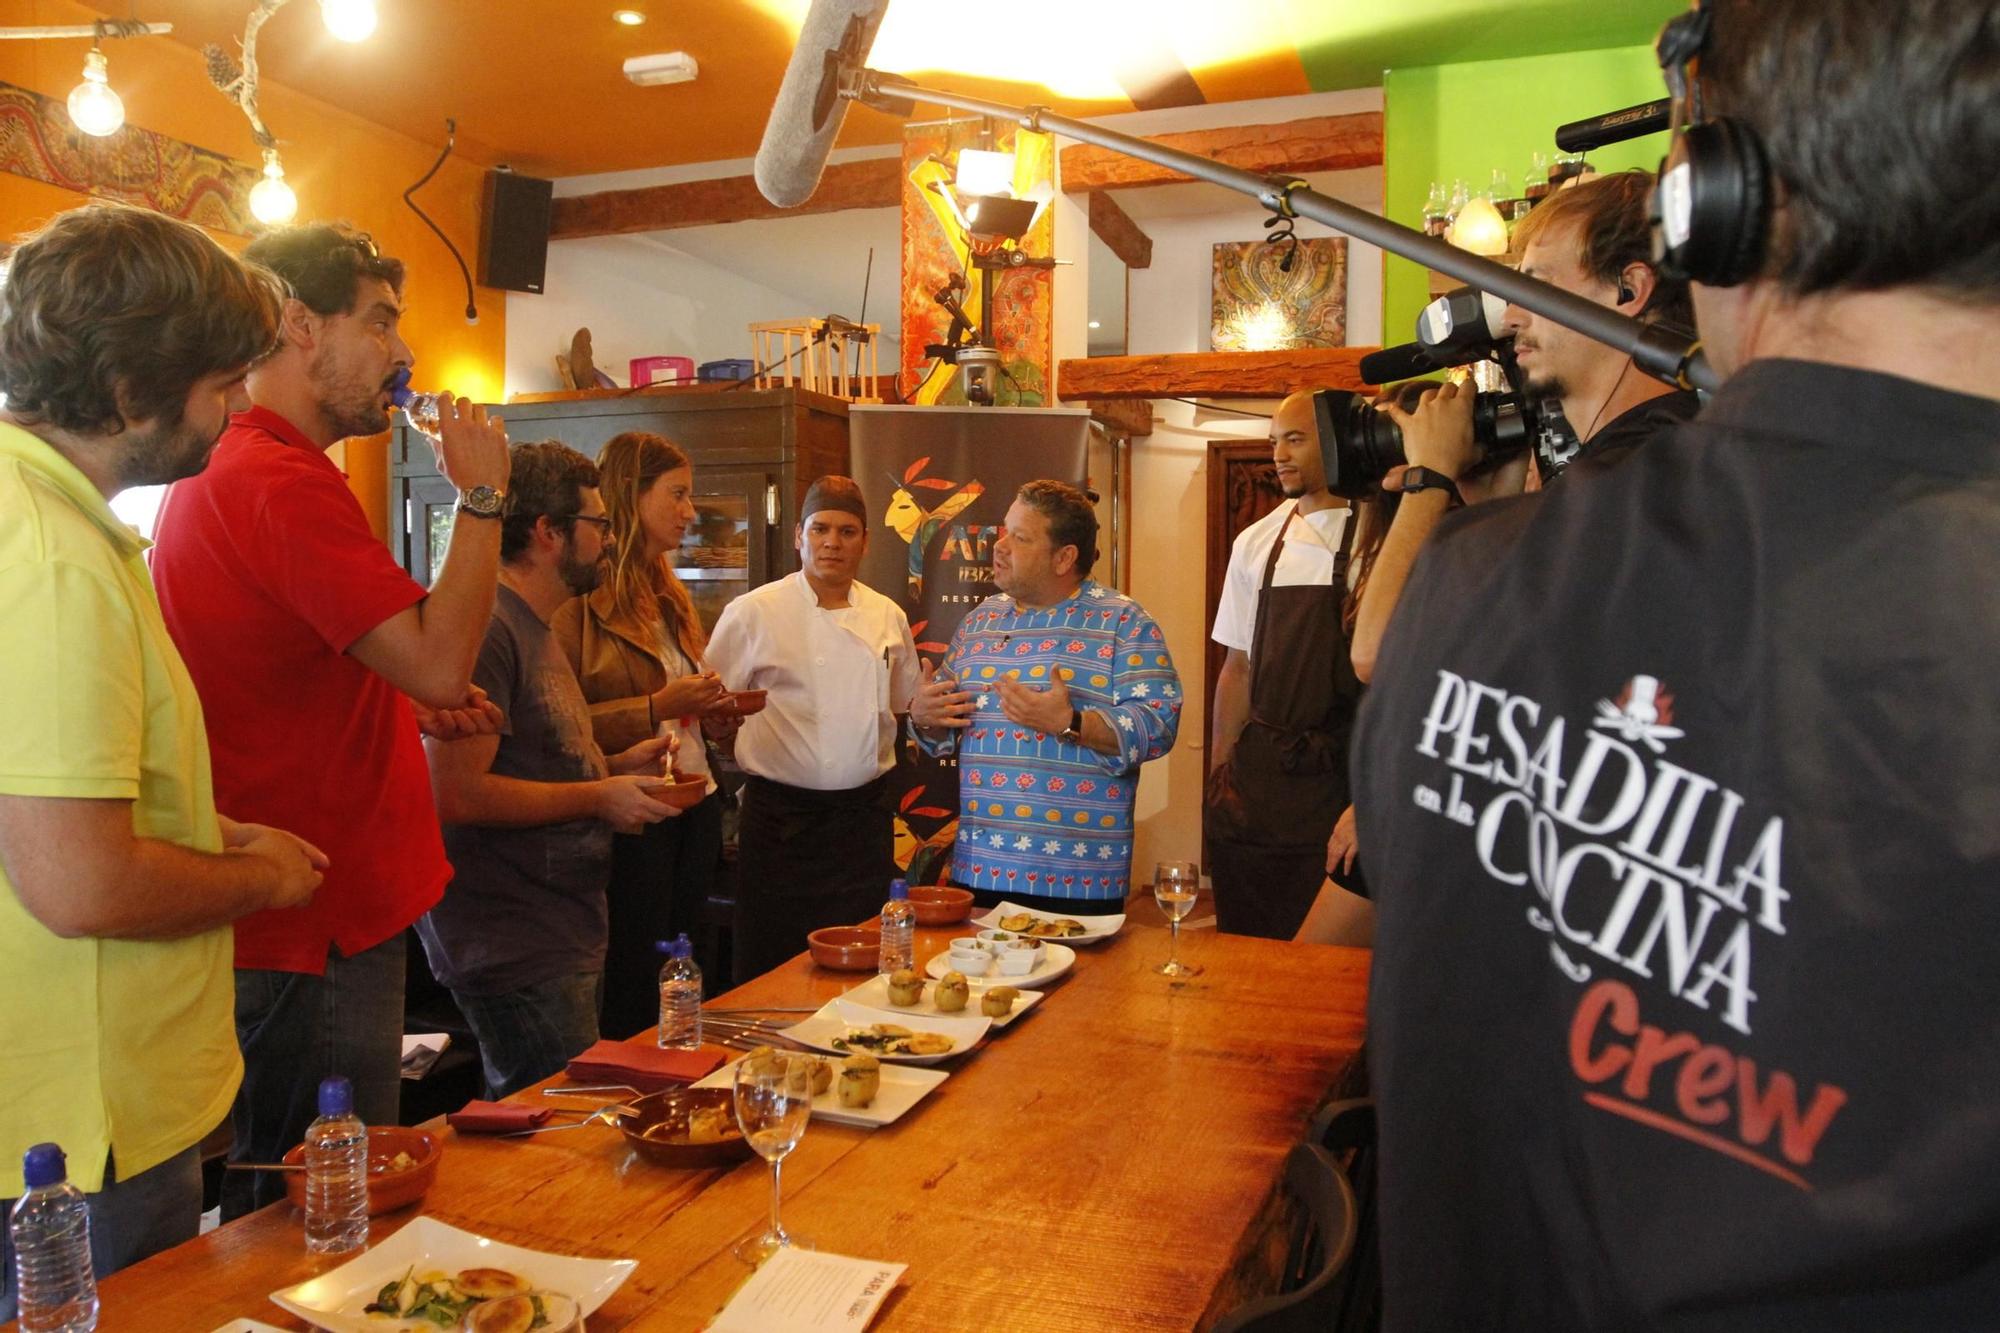 Chicote y su 'Pesadilla en la cocina' en Ibiza visitó el restaurante vinculado con la secta chamánica